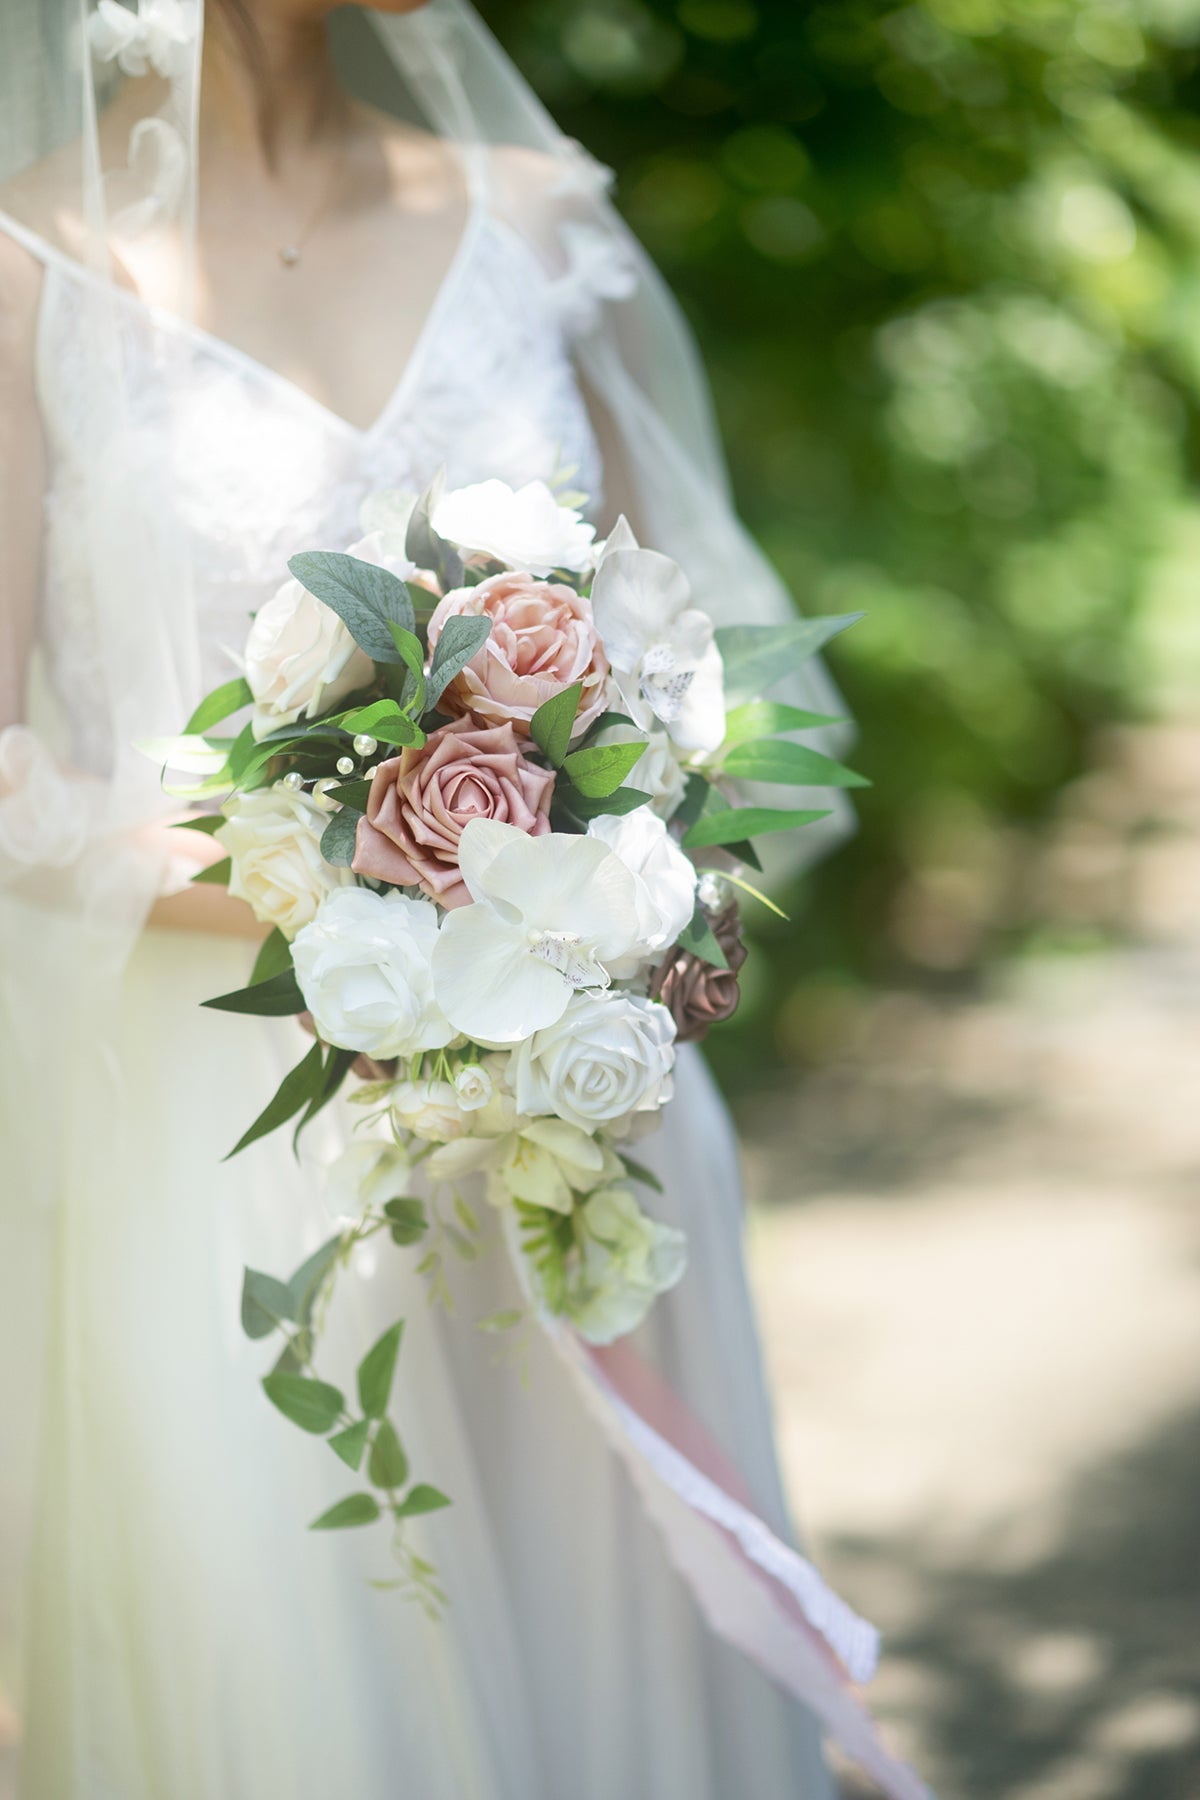 DIY Wedding Flower Packages in Dusty Rose & Cream